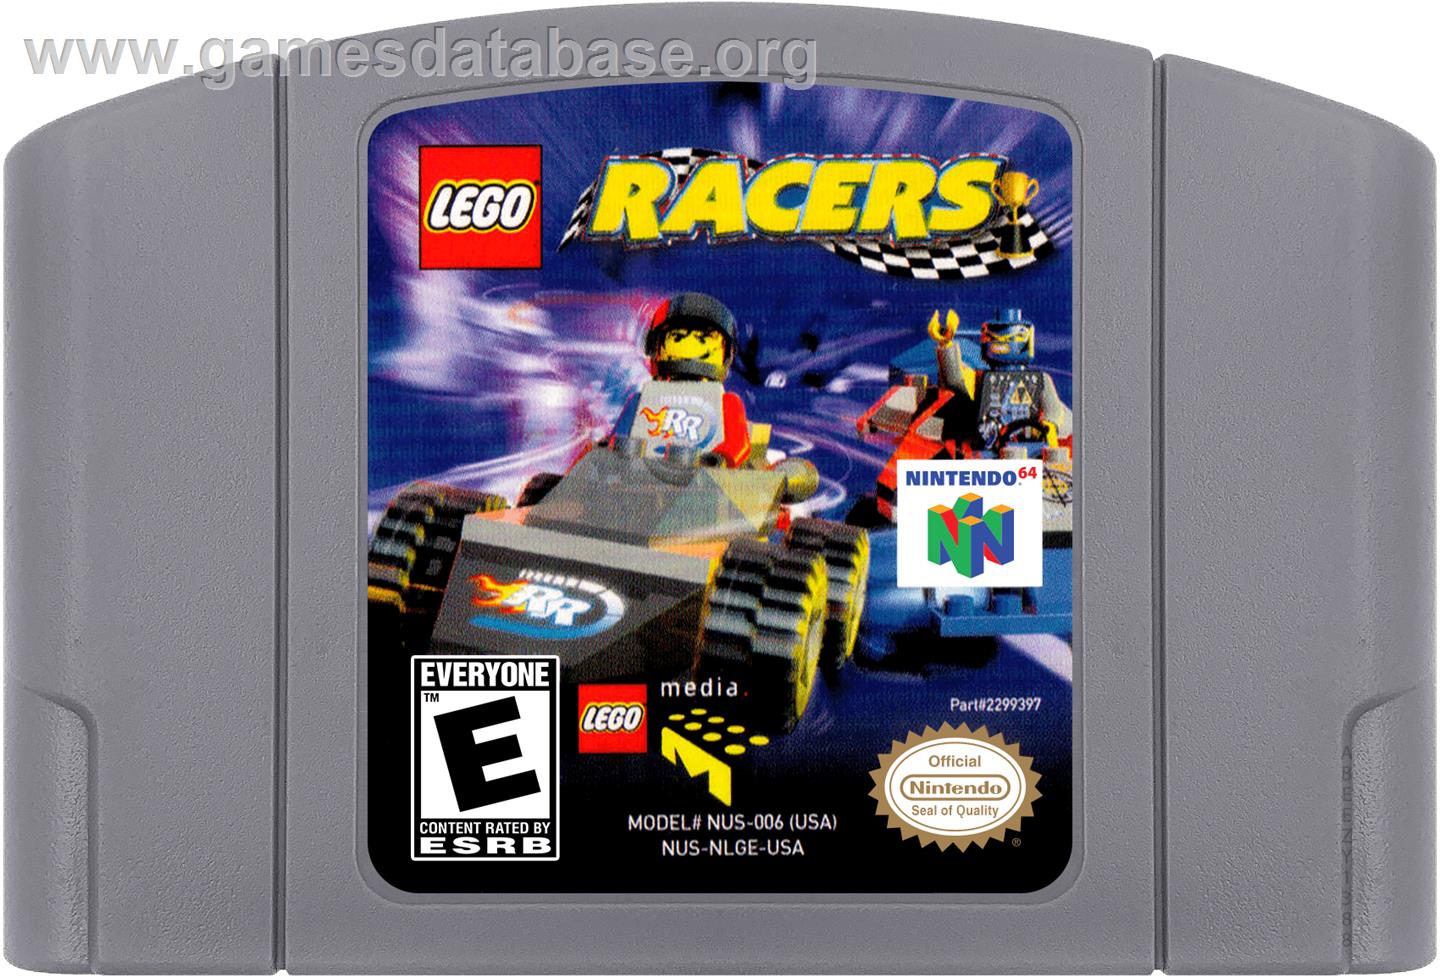 LEGO Racers - Nintendo N64 - Artwork - Cartridge